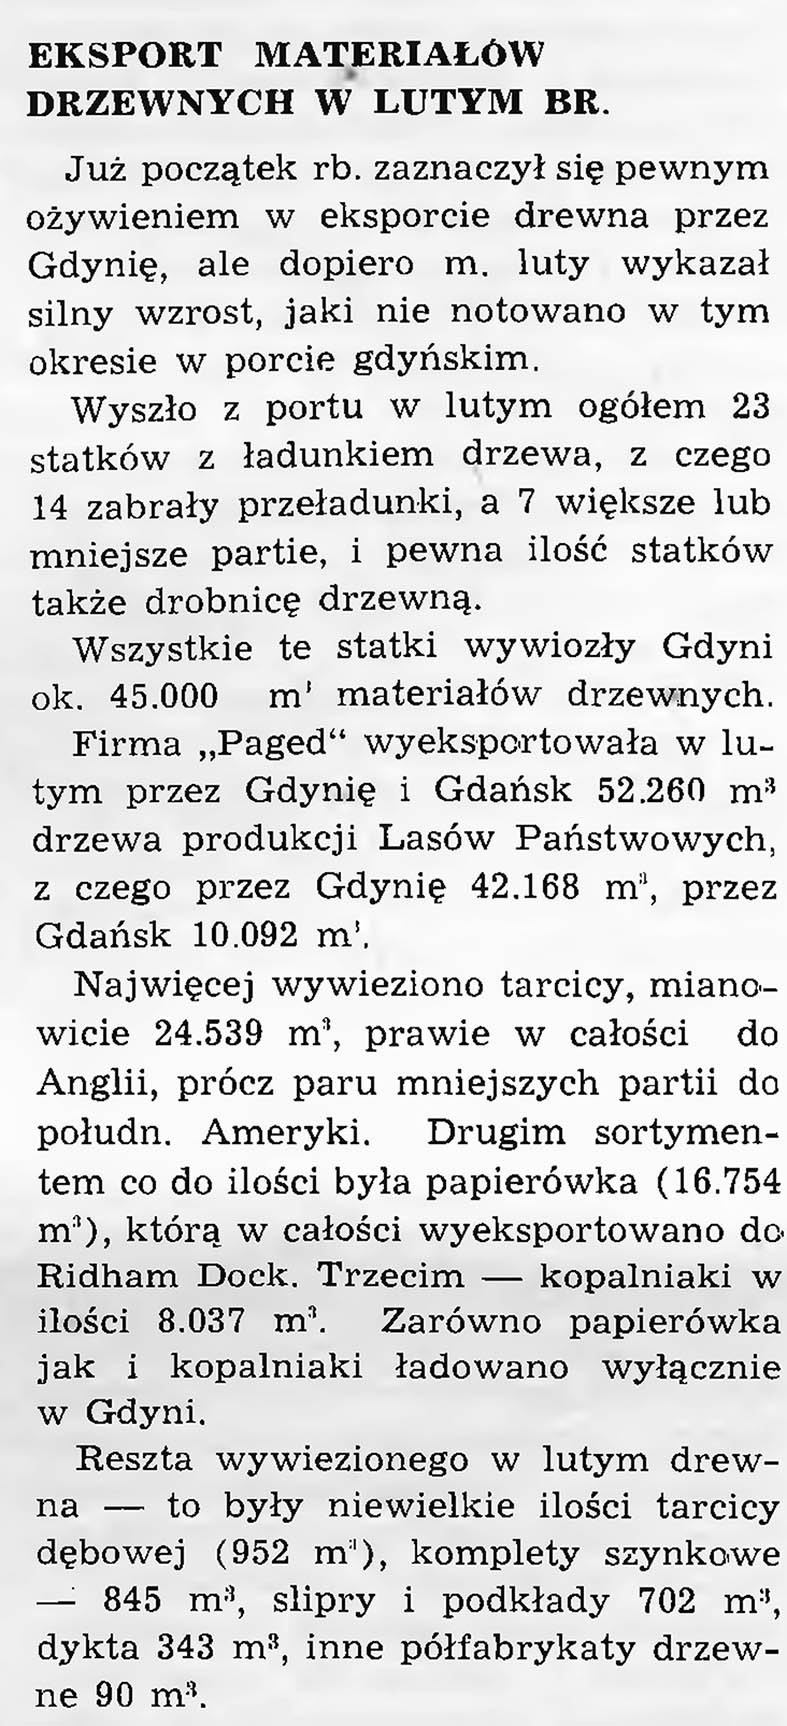 Eksport materiałów drzewnych  w lutym br. [1938]